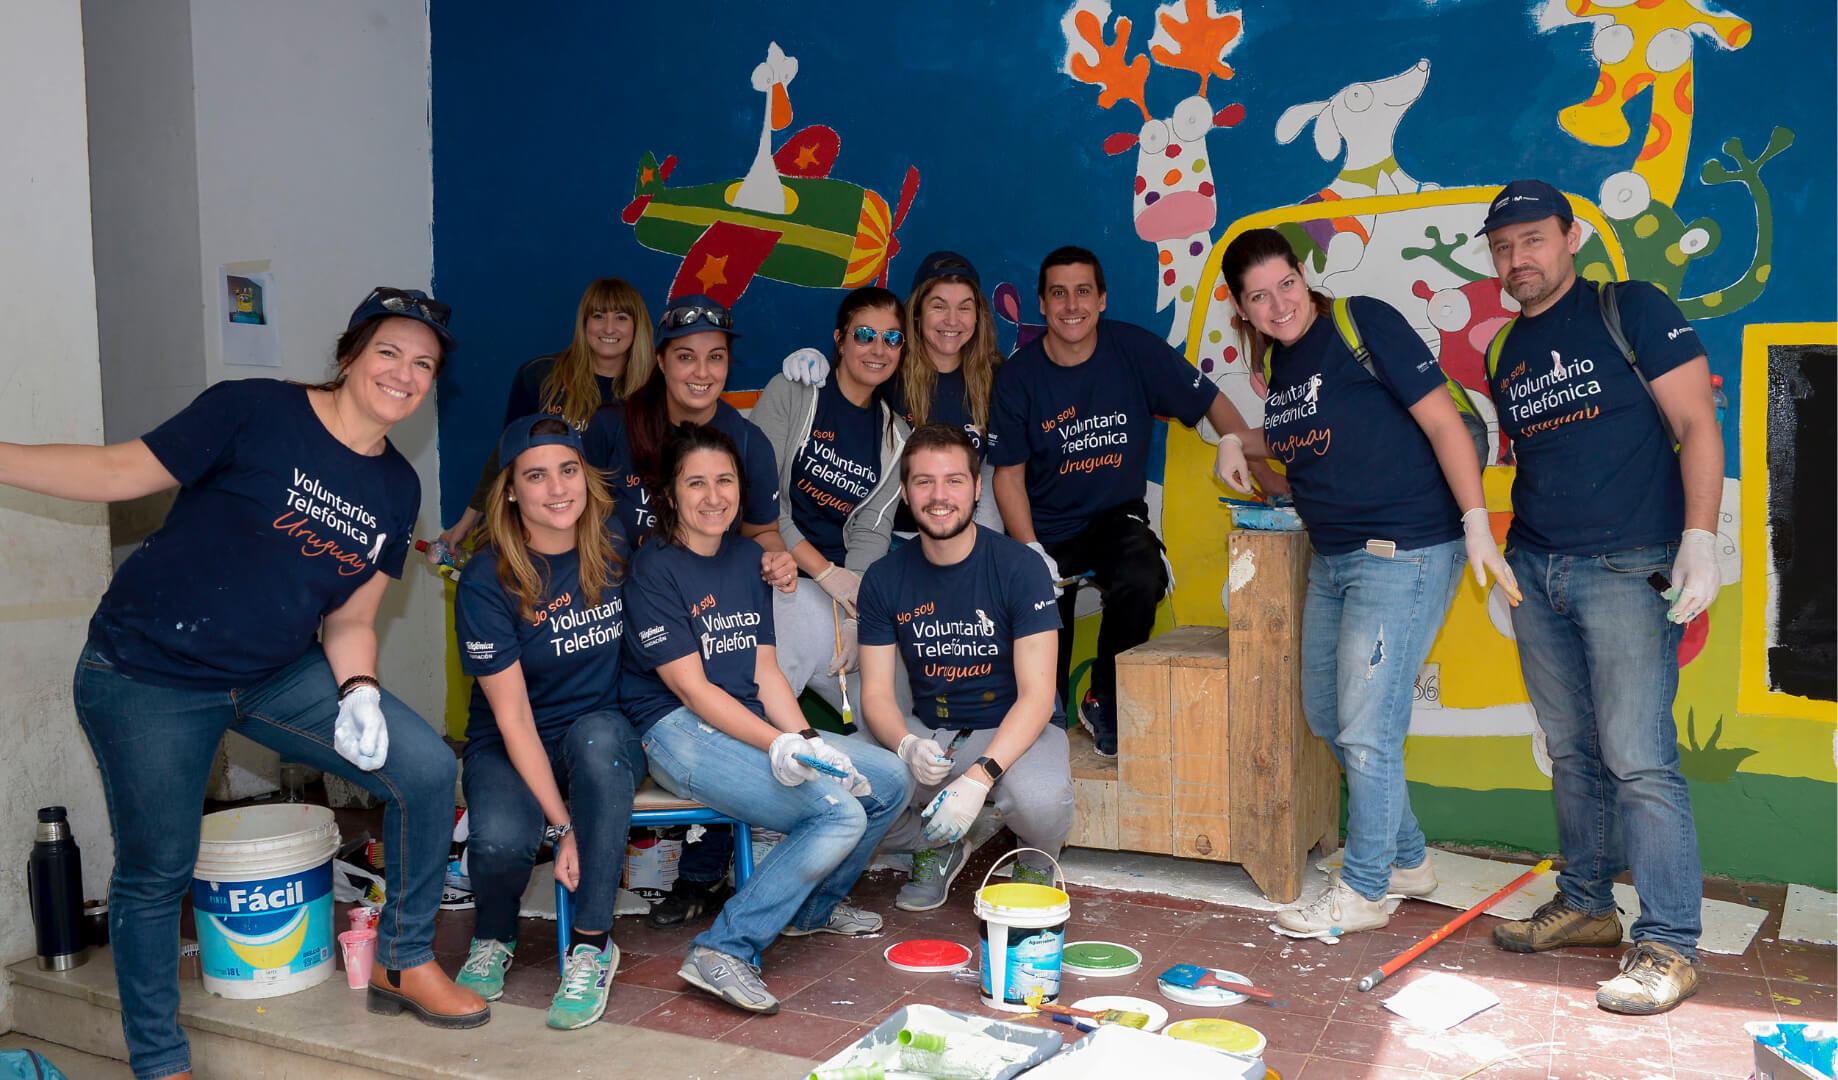 Voluntarios posando en una actividad de pintura de murales infantiles